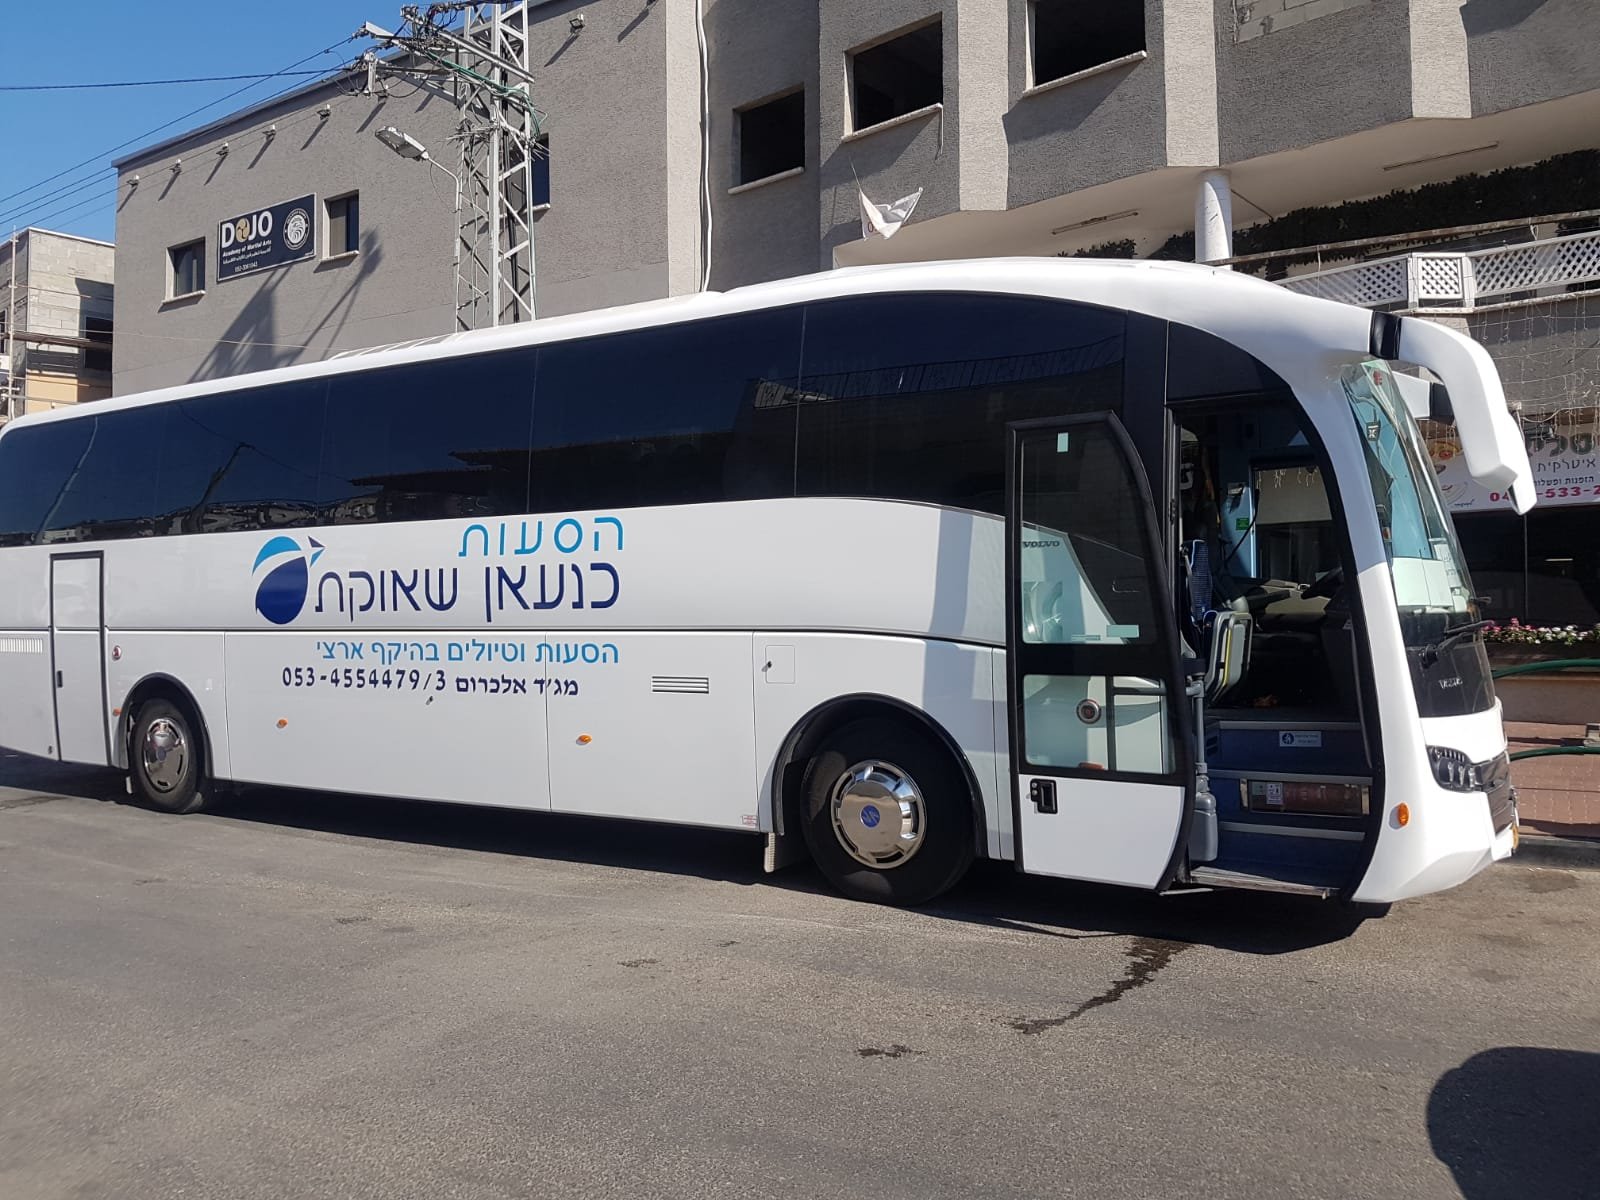 انطلاق الحافلات الى تل أبيب للمشاركة في امّ المظاهرات -9